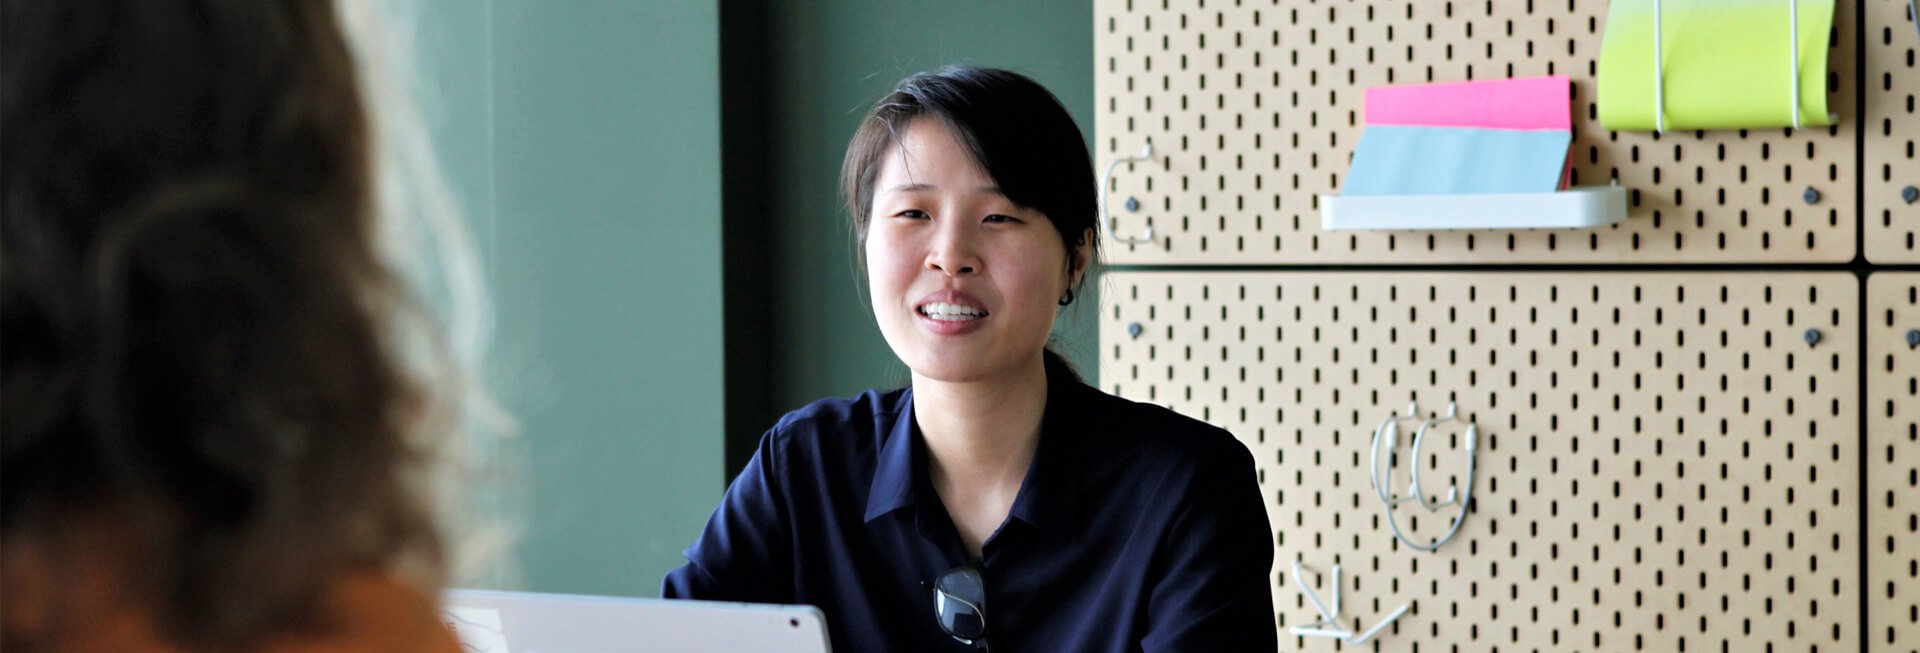 Jinq-Ching Vuong im Scrum Raum während eines Meetings